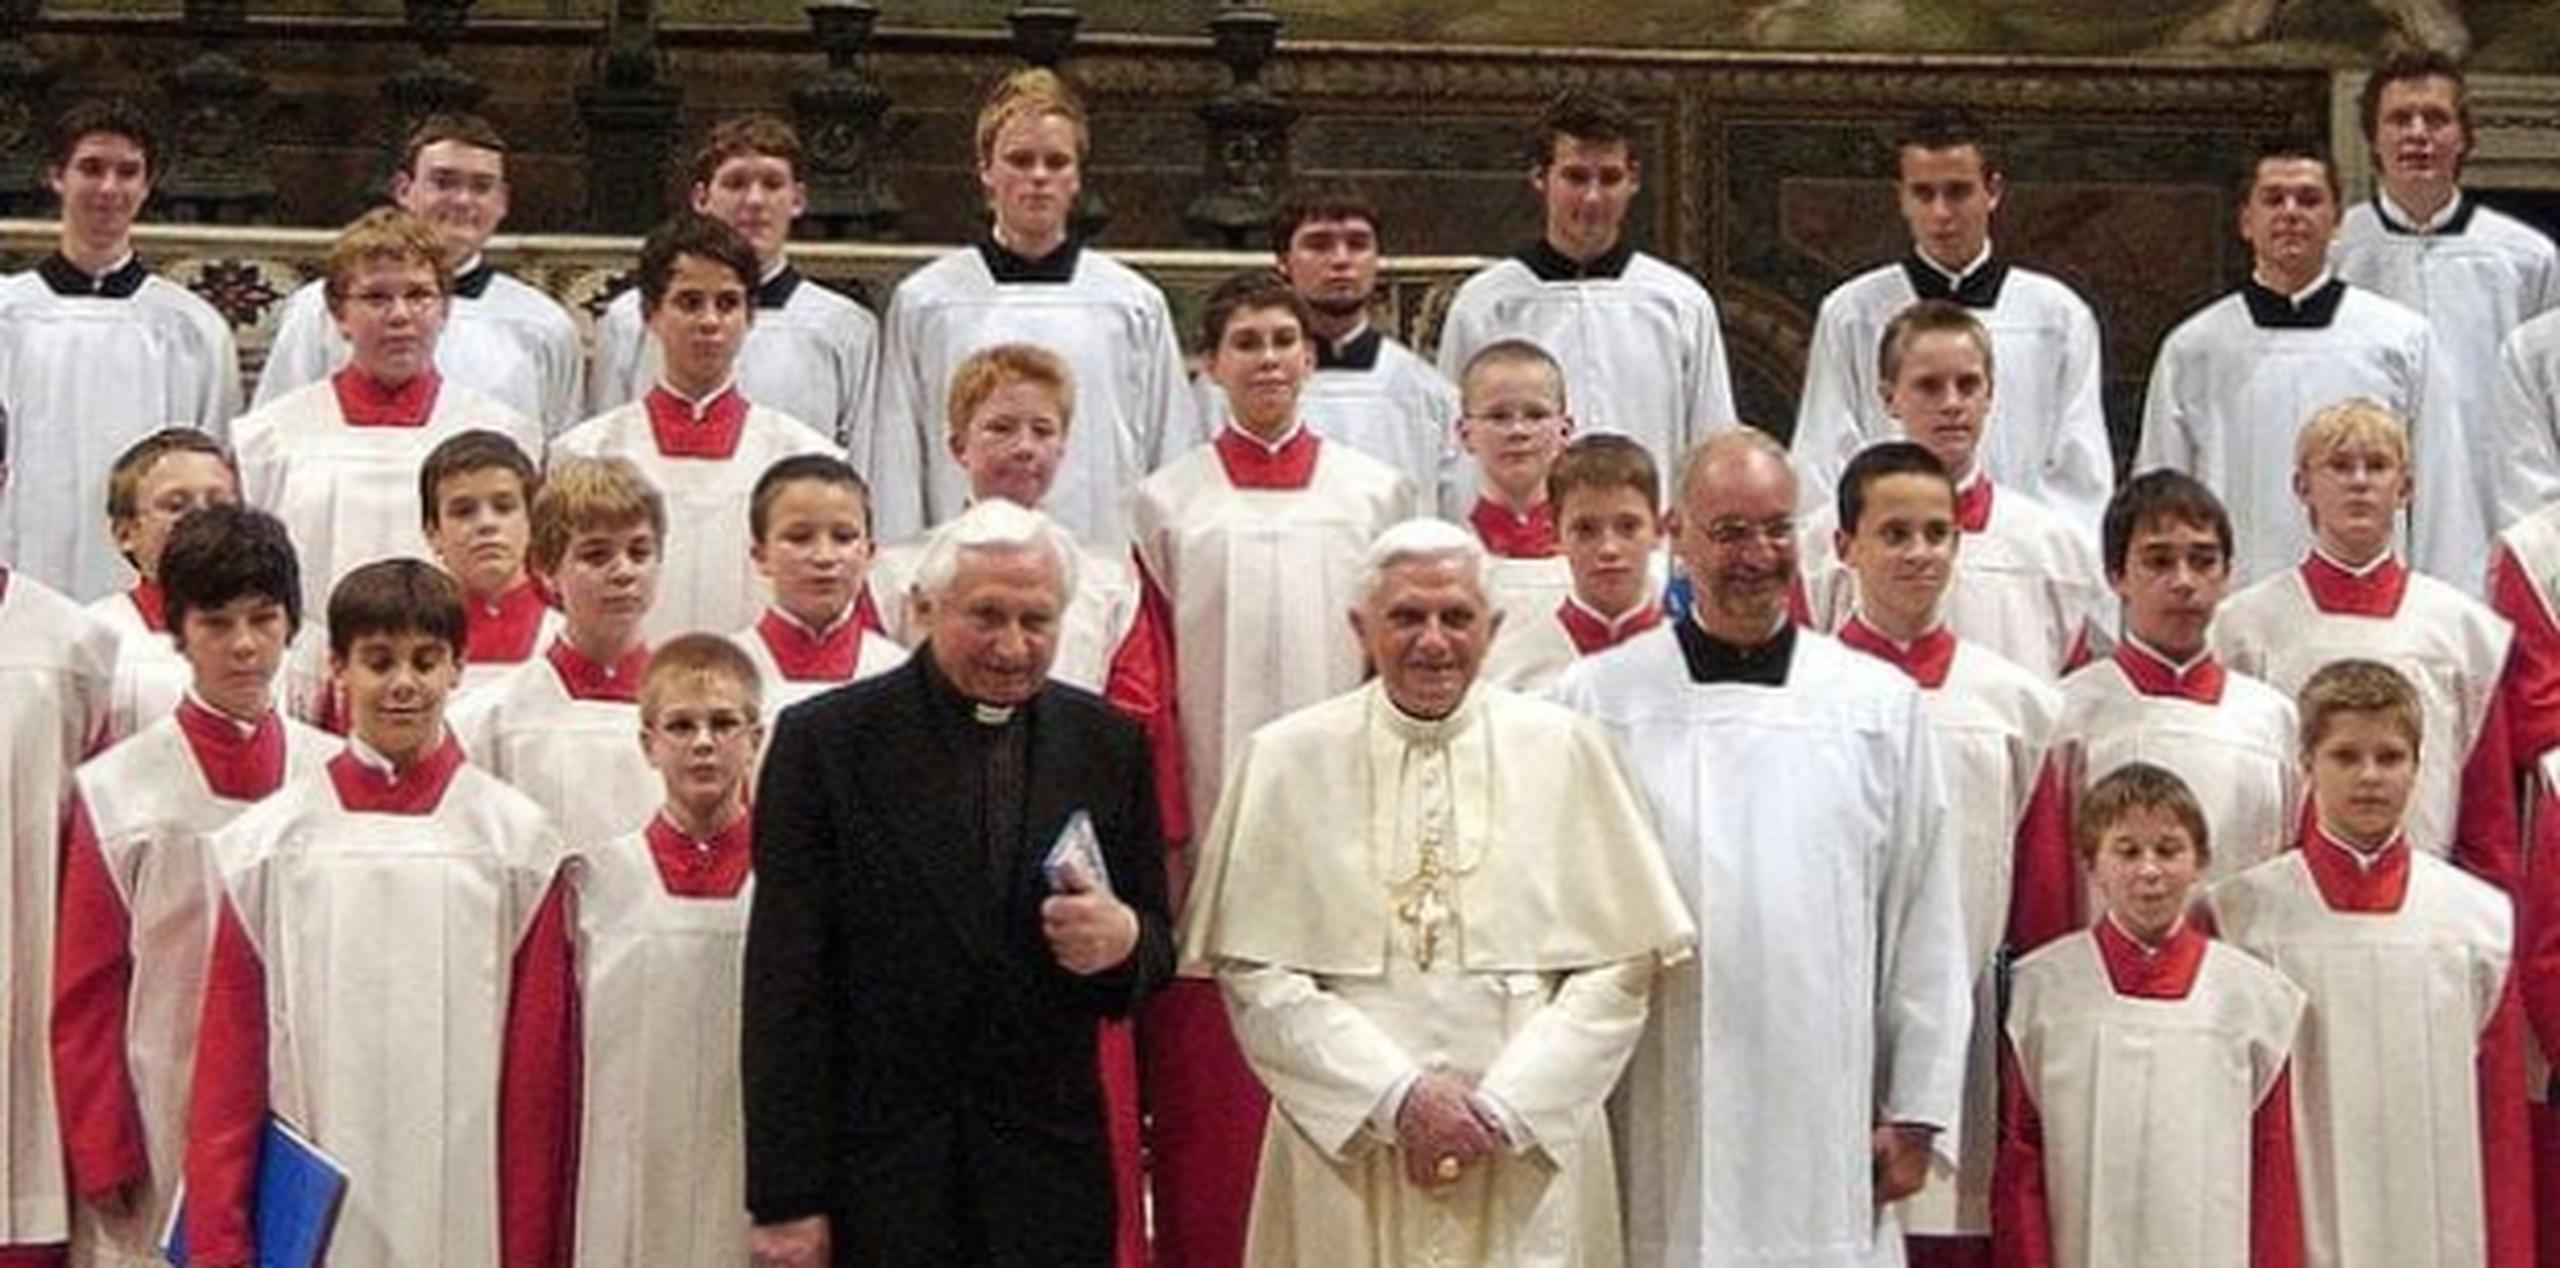 El coro fue dirigido de 1964 a 1994 por el hermano mayor del papa emérito Benedicto XVI, el reverendo Georg Ratzinger. (Getty)